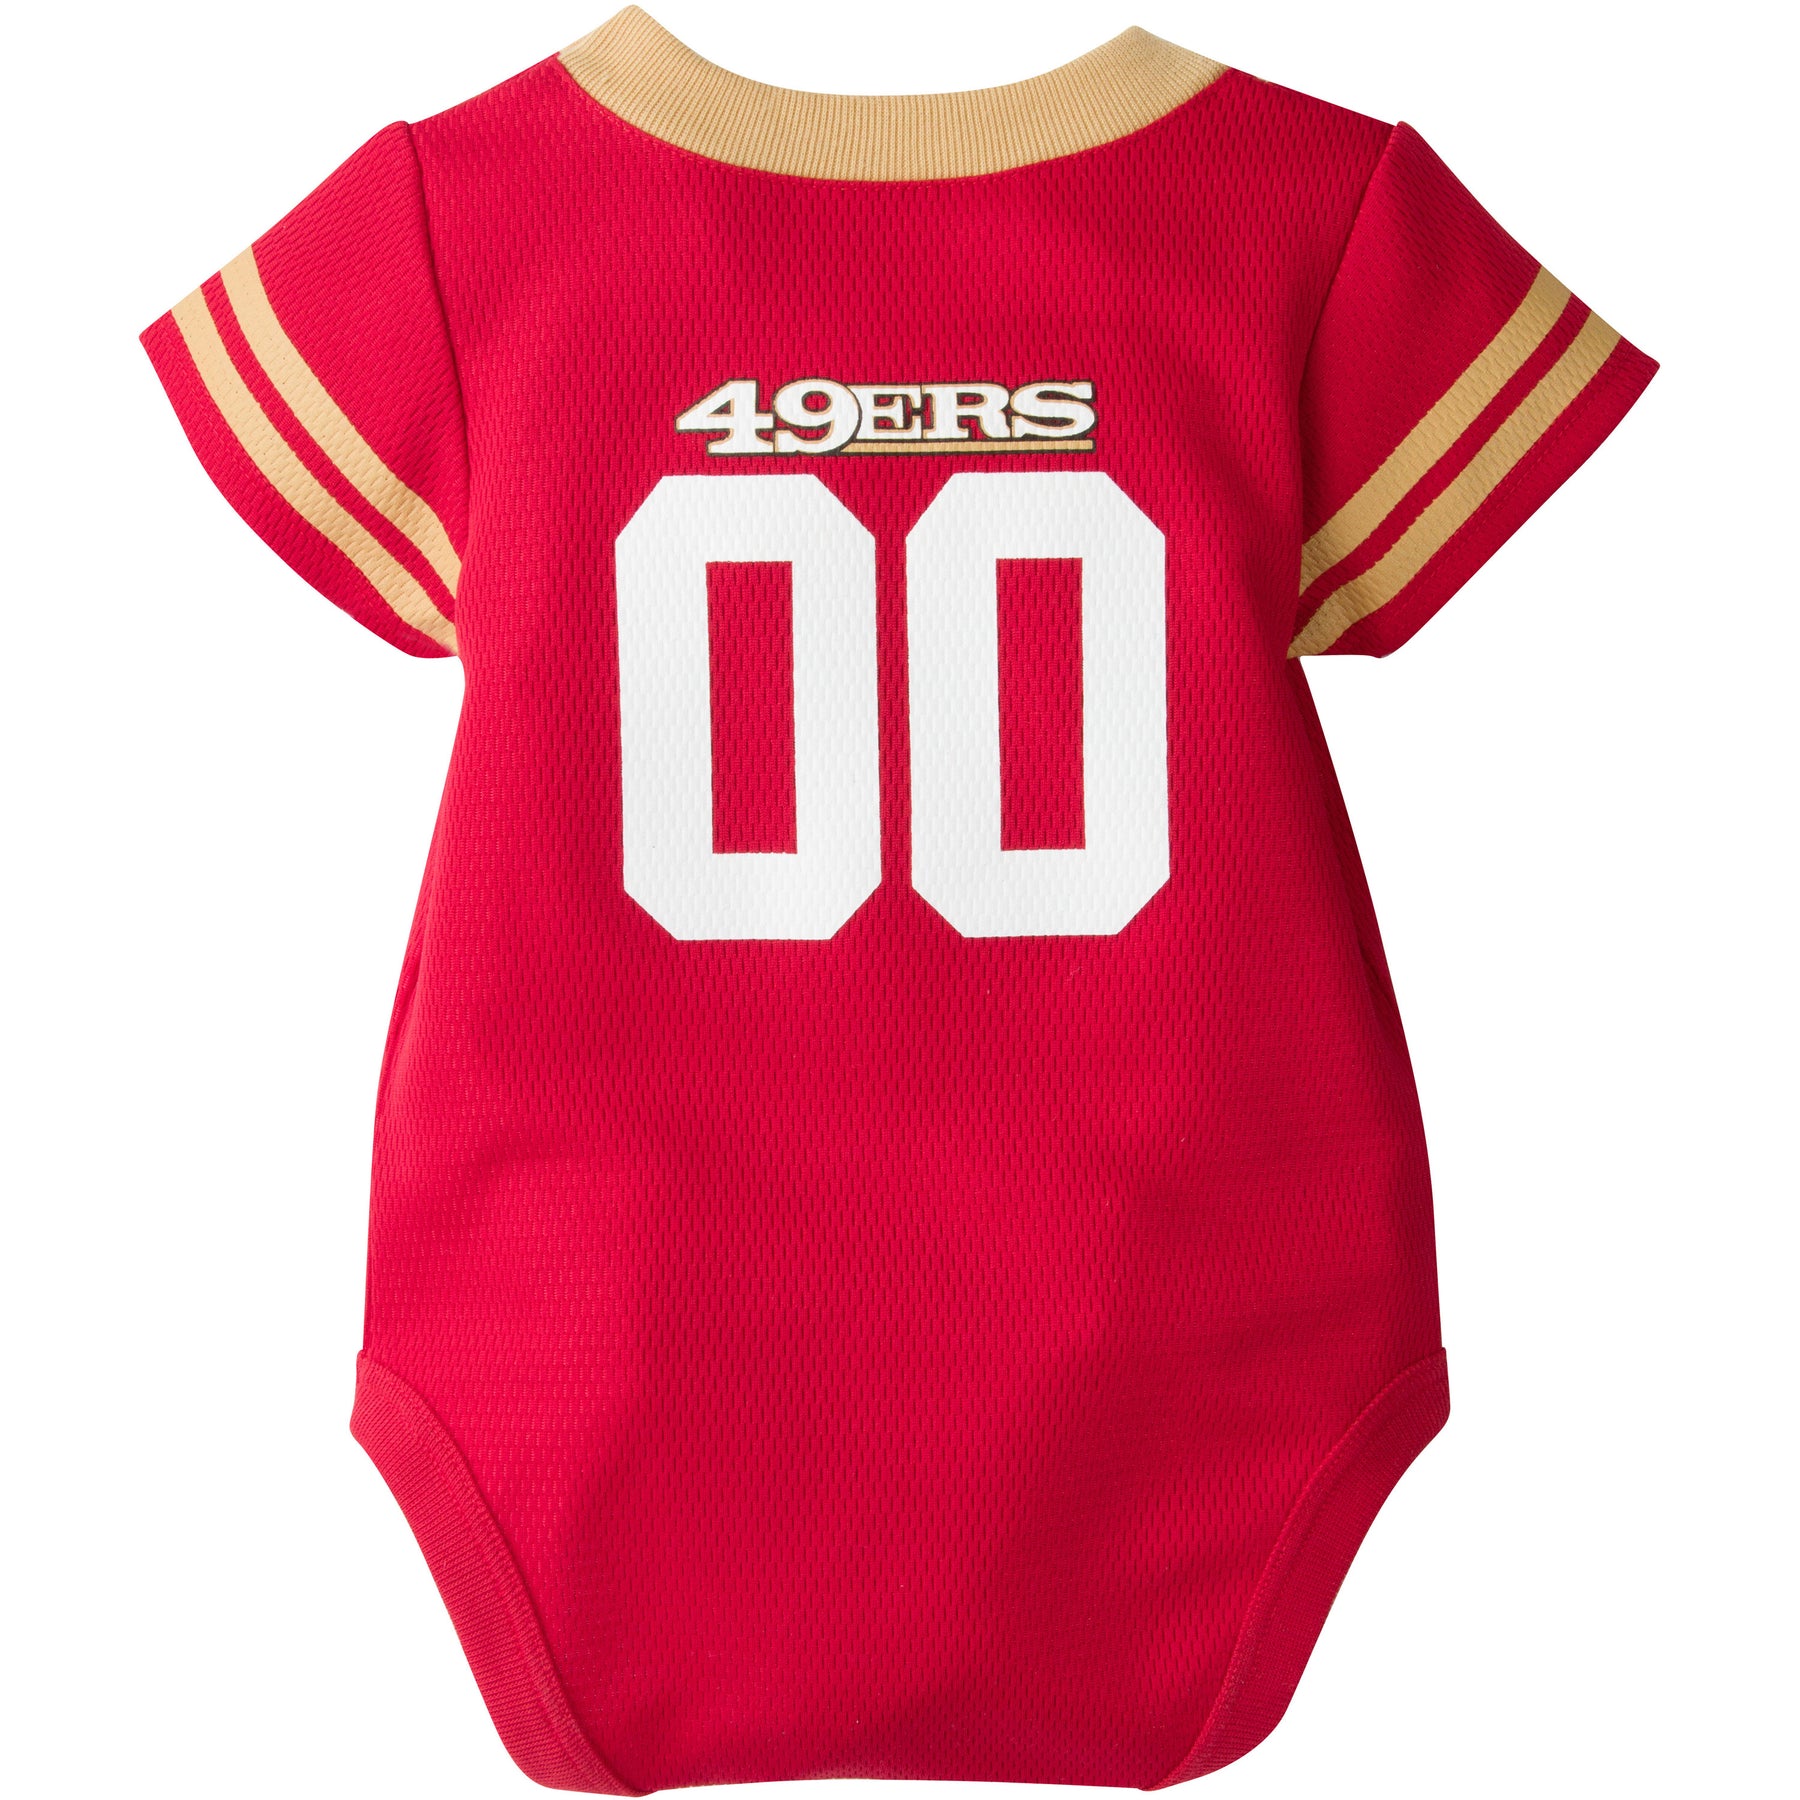 49ers jersey 18 months